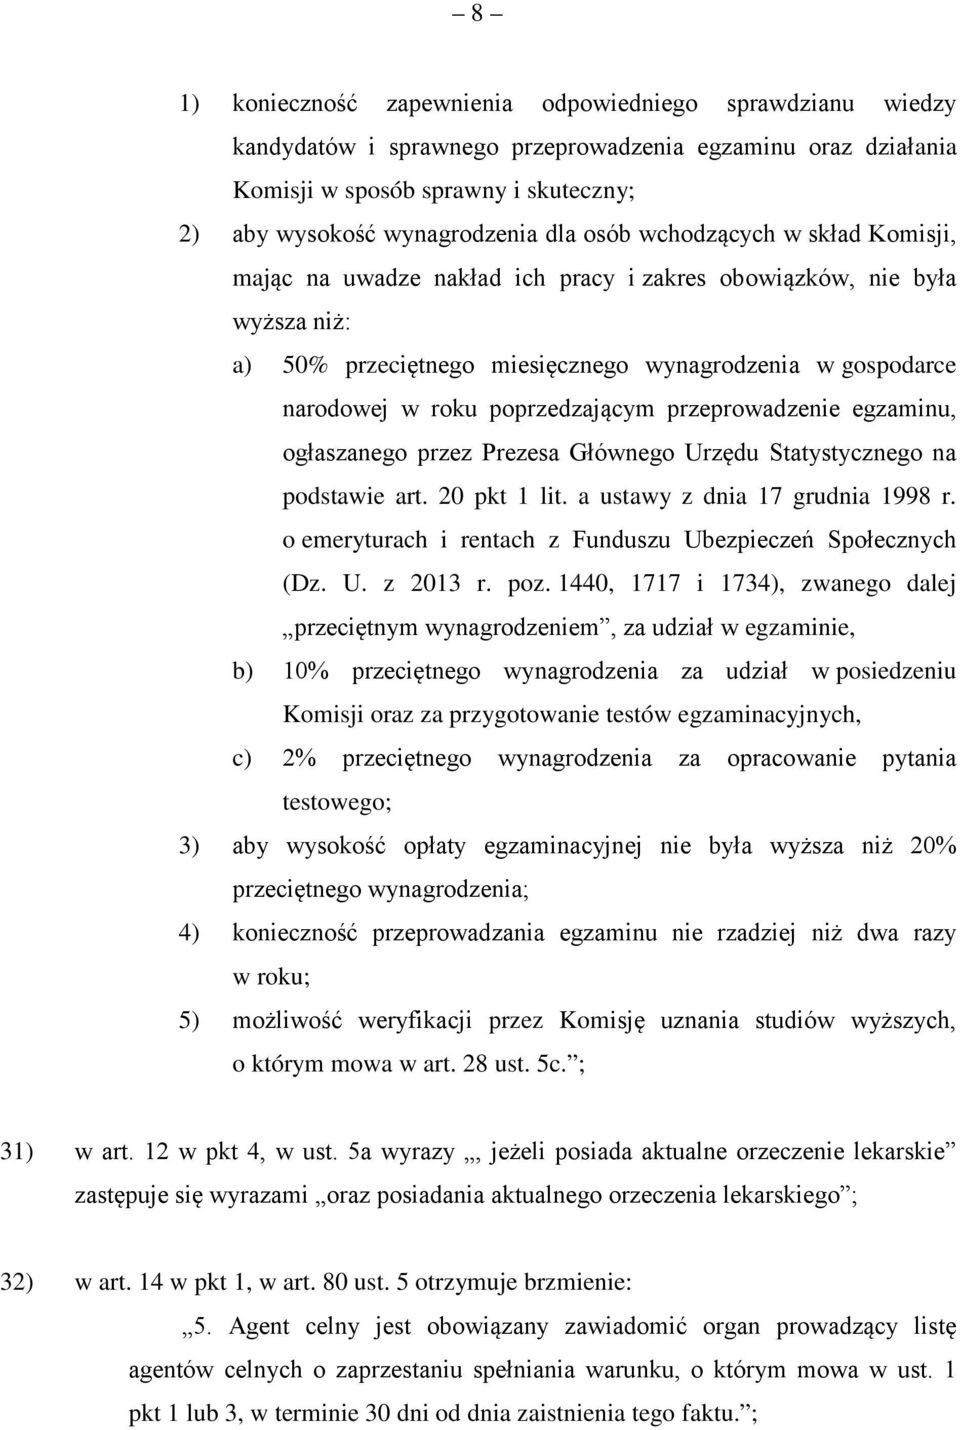 poprzedzającym przeprowadzenie egzaminu, ogłaszanego przez Prezesa Głównego Urzędu Statystycznego na podstawie art. 20 pkt 1 lit. a ustawy z dnia 17 grudnia 1998 r.